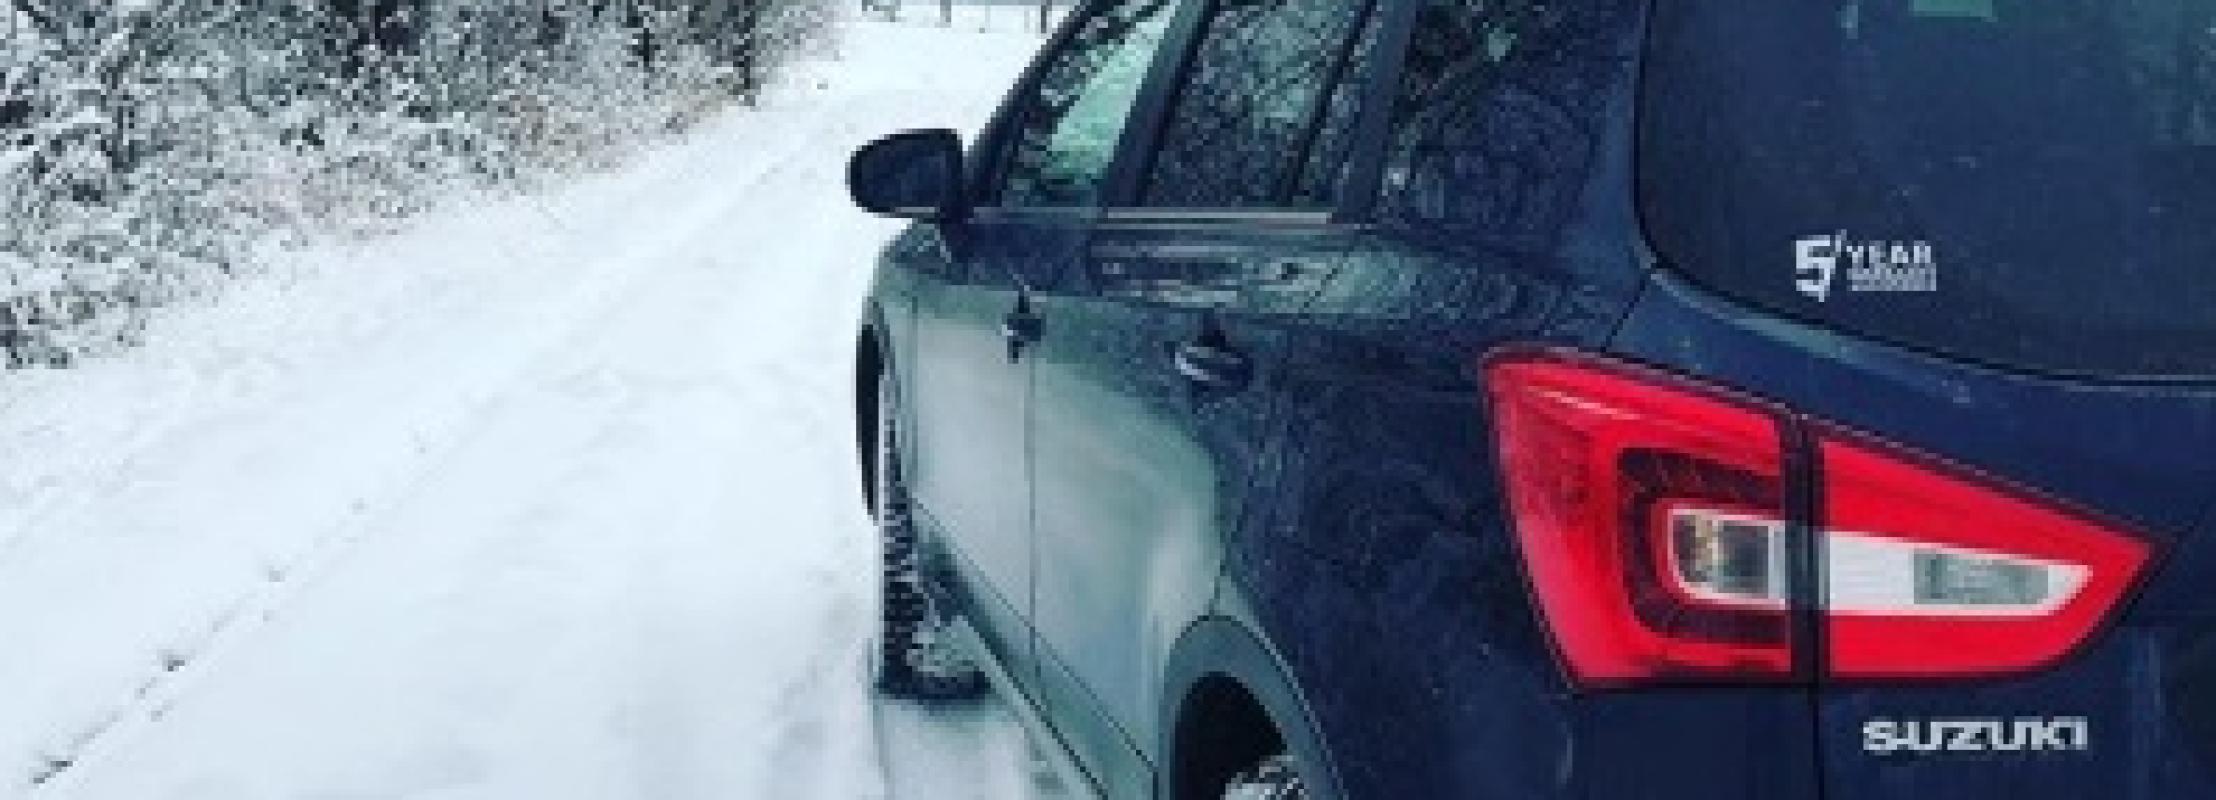 Suzuki in de sneeuw